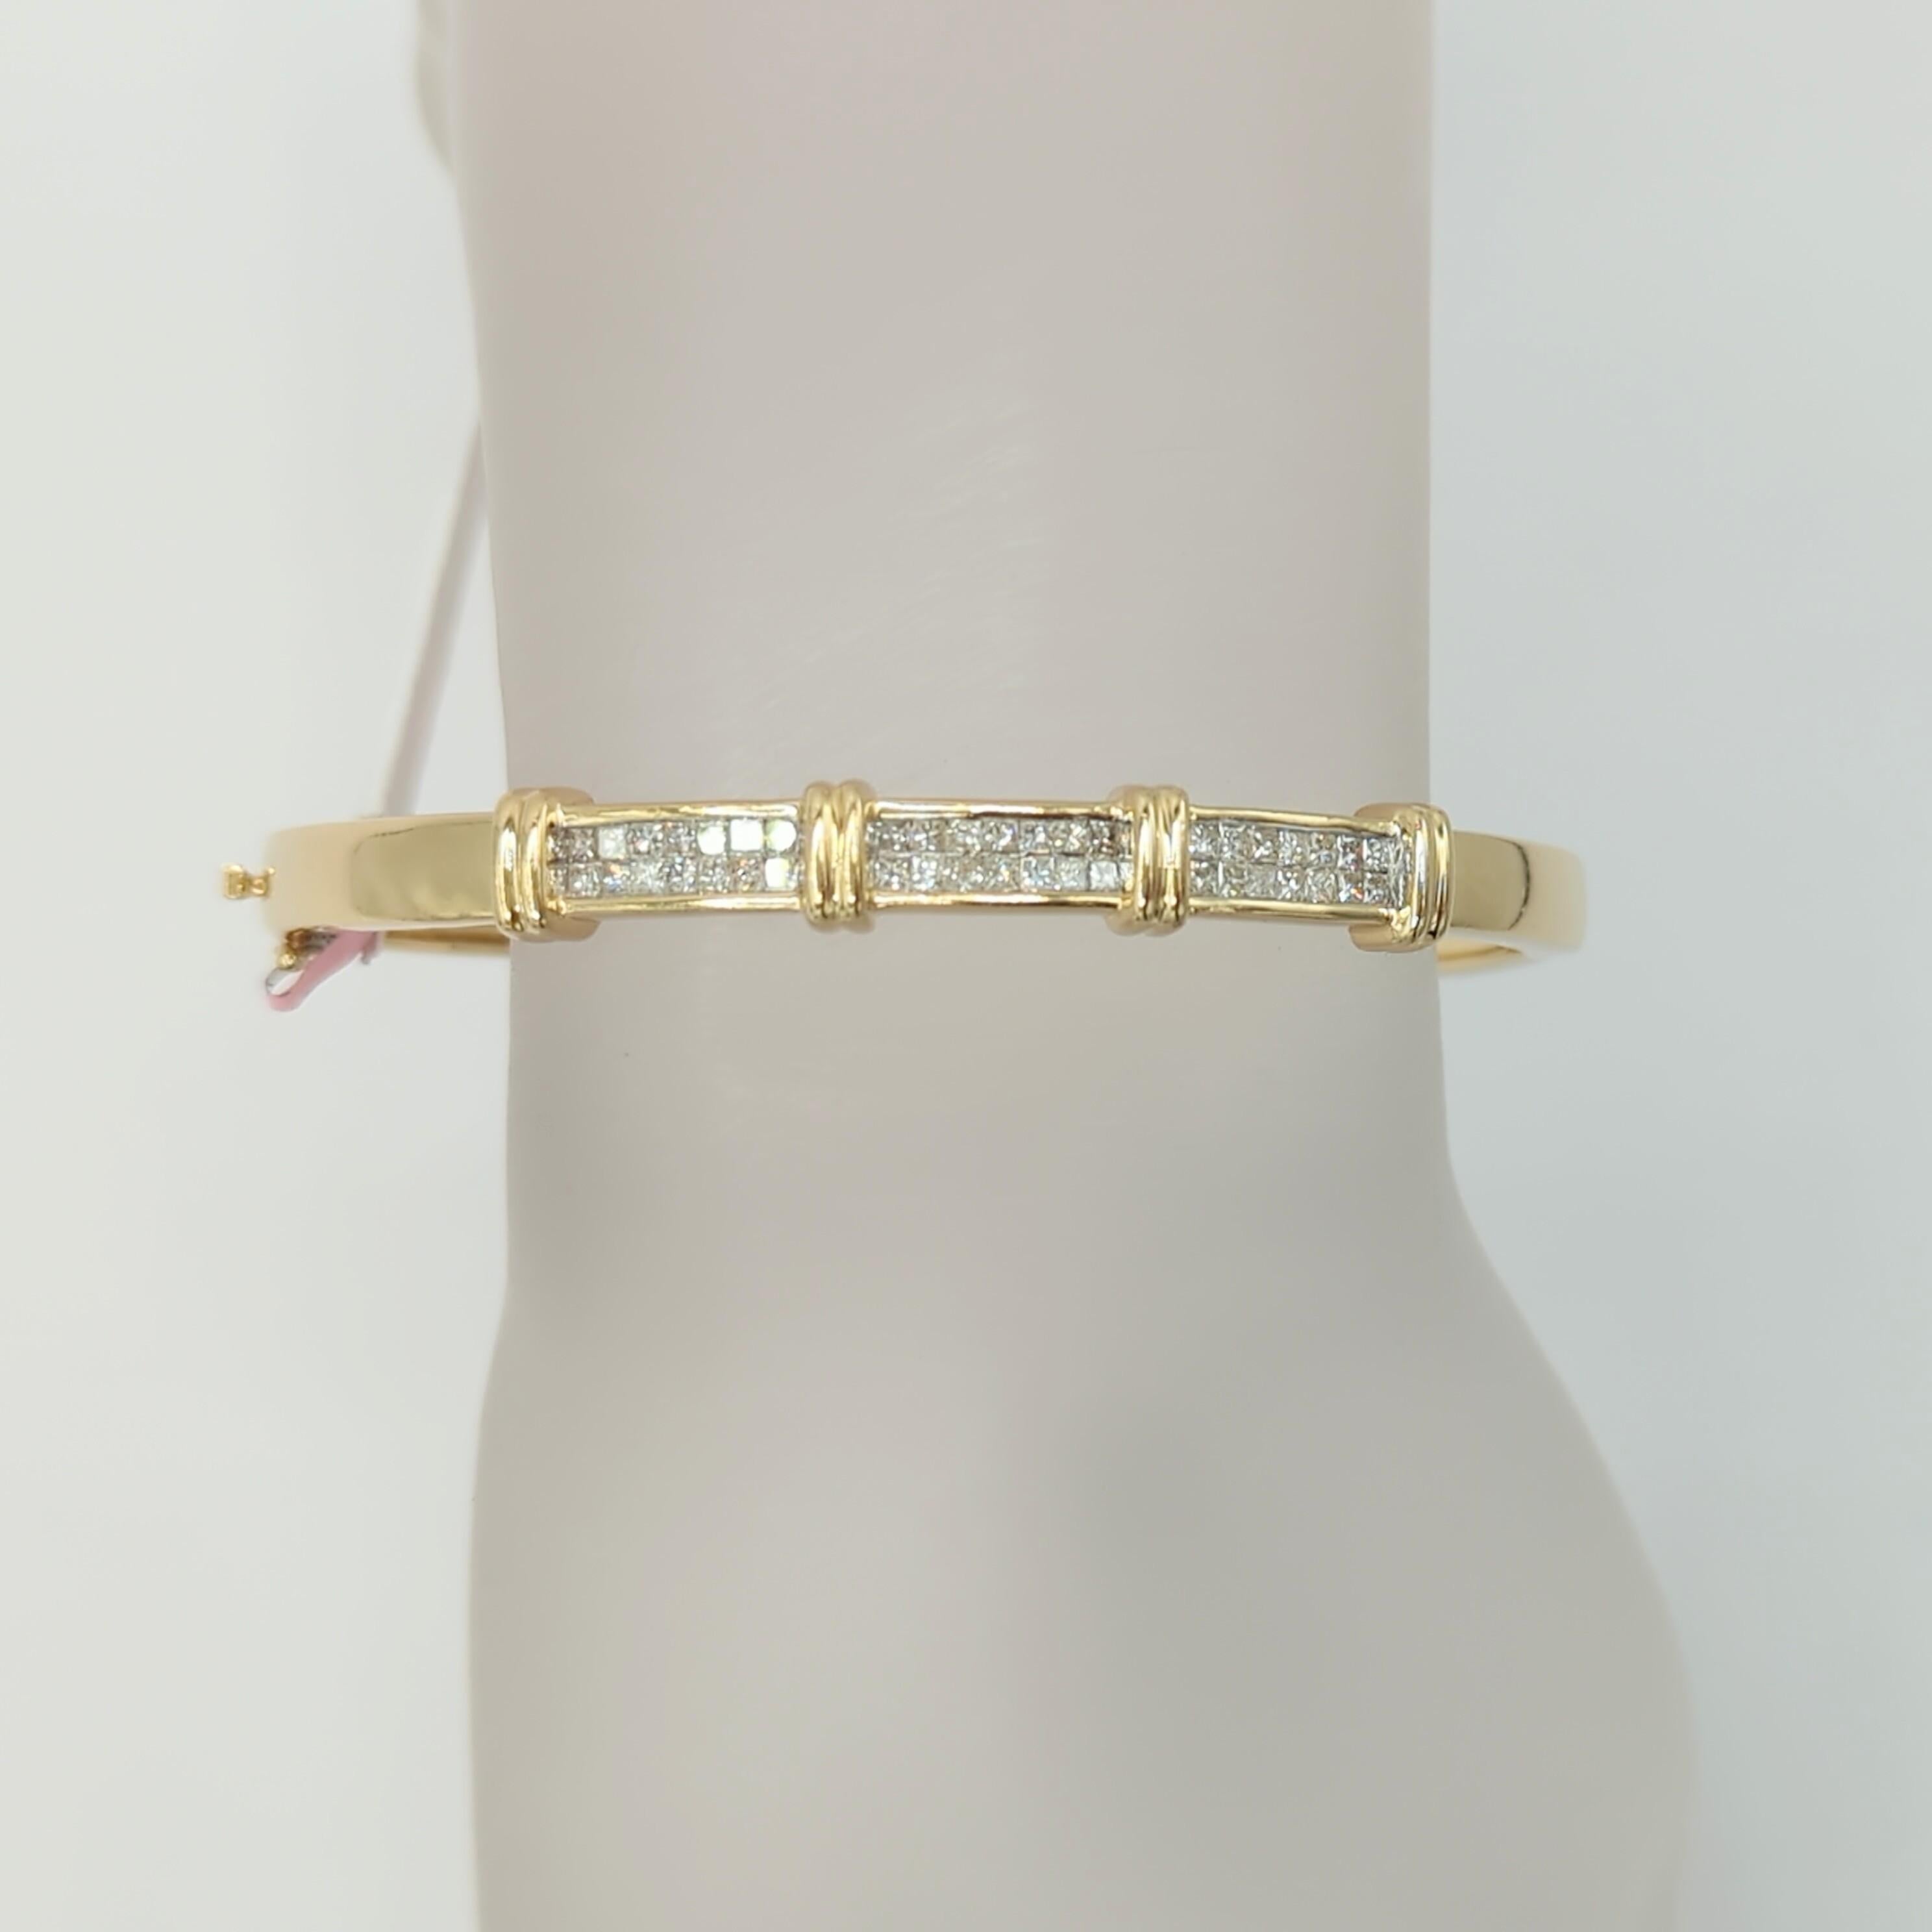 Wunderschöner 2,50 ct. weißer Diamant im Prinzessschliff, handgefertigt in 14k Gelbgold.  Dieser Armreif lässt sich hervorragend mit einer Uhr oder anderen Armbändern/Bangles kombinieren oder auch alleine tragen.